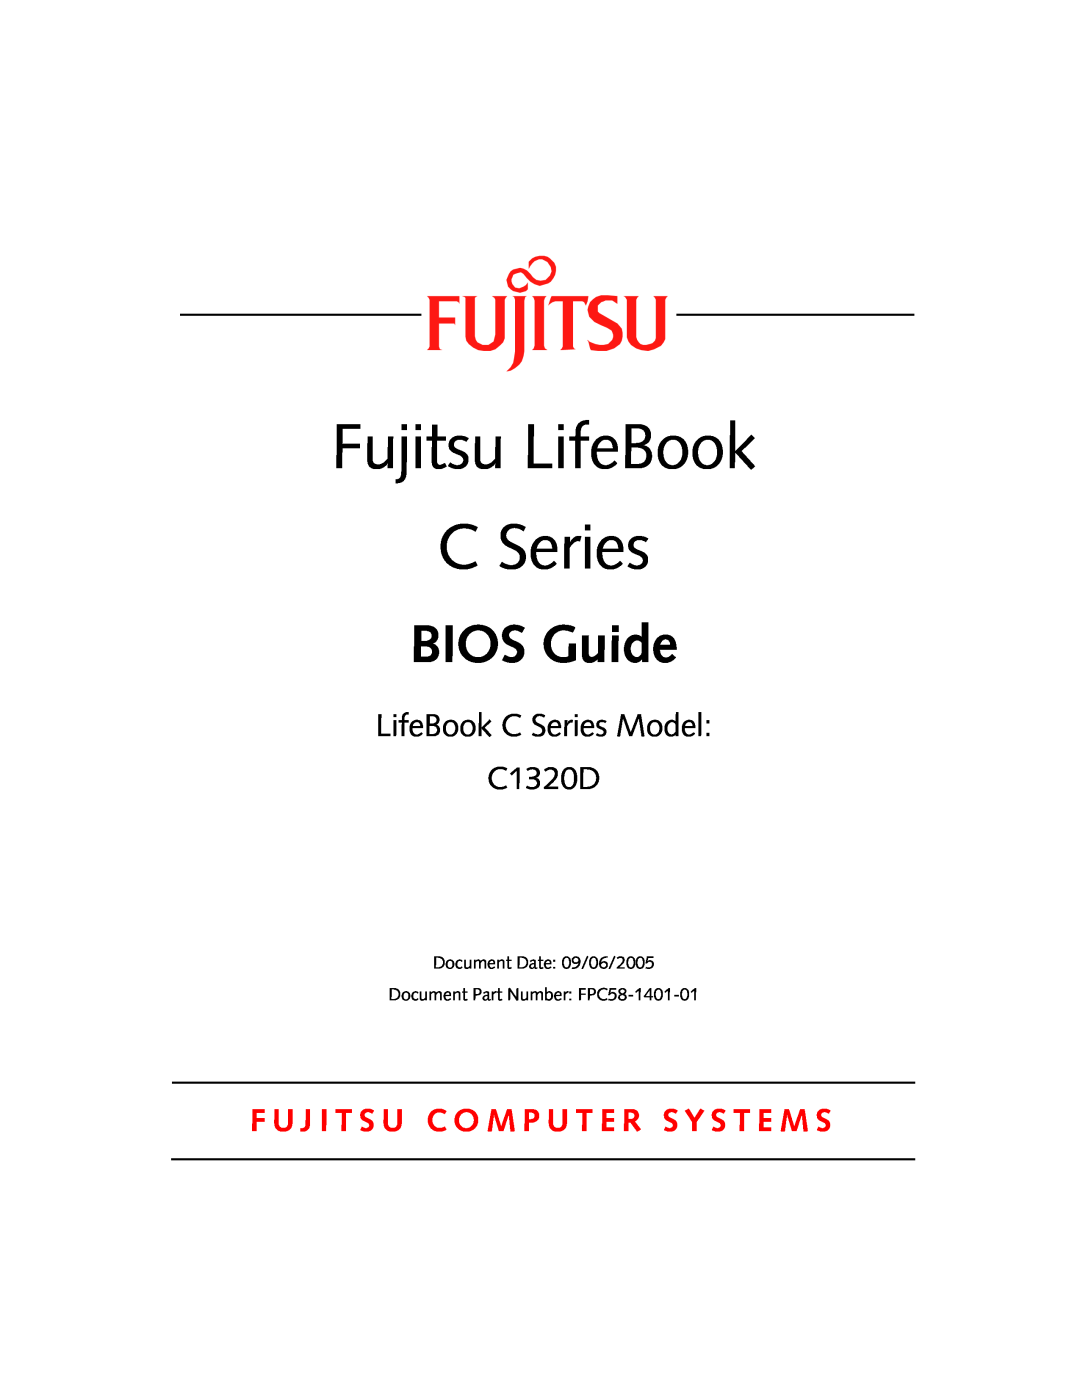 Fujitsu manual Fujitsu LifeBook, BIOS Guide, LifeBook C Series Model C1320D 